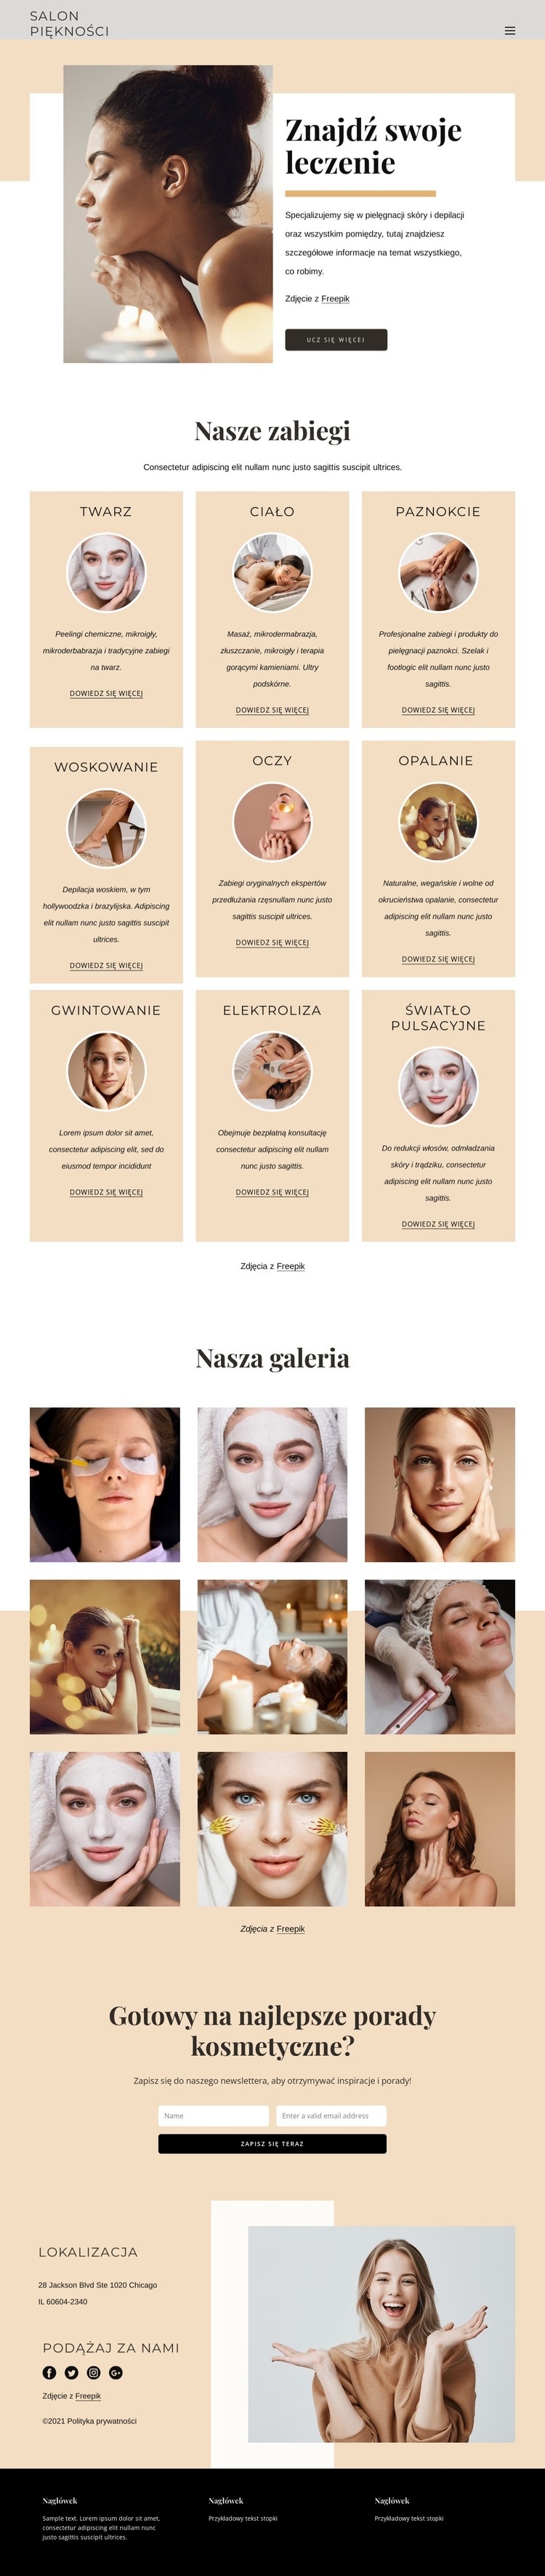 Profesjonalne zabiegi kosmetyczne Makieta strony internetowej